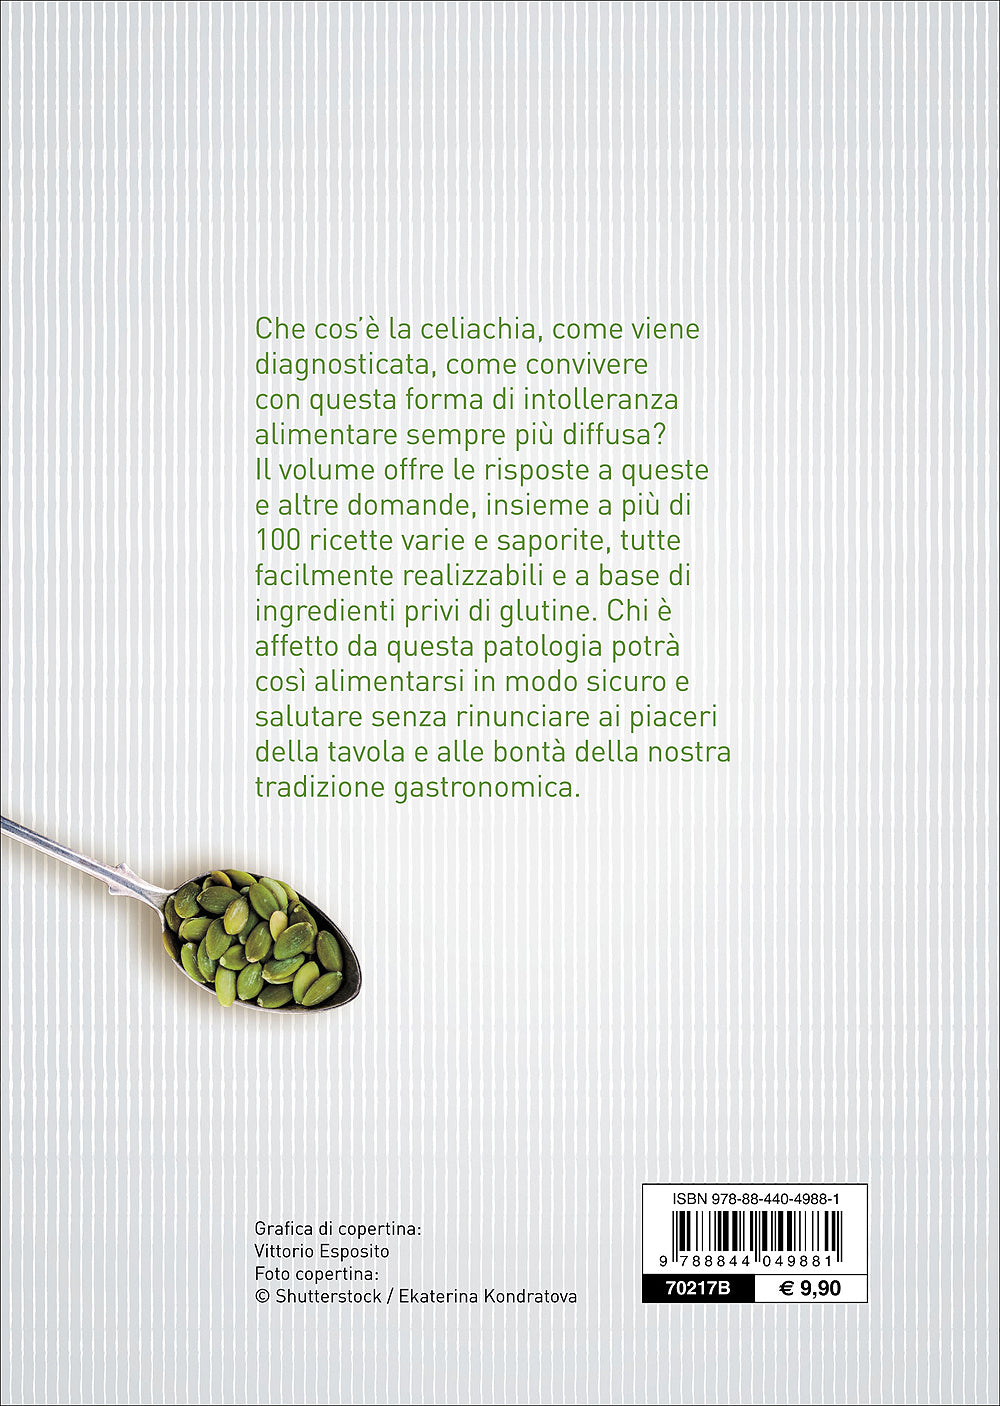 Cucinare senza glutine::Ricettario per celiaci - Con il contributo di Associazione Italiana Celiachia